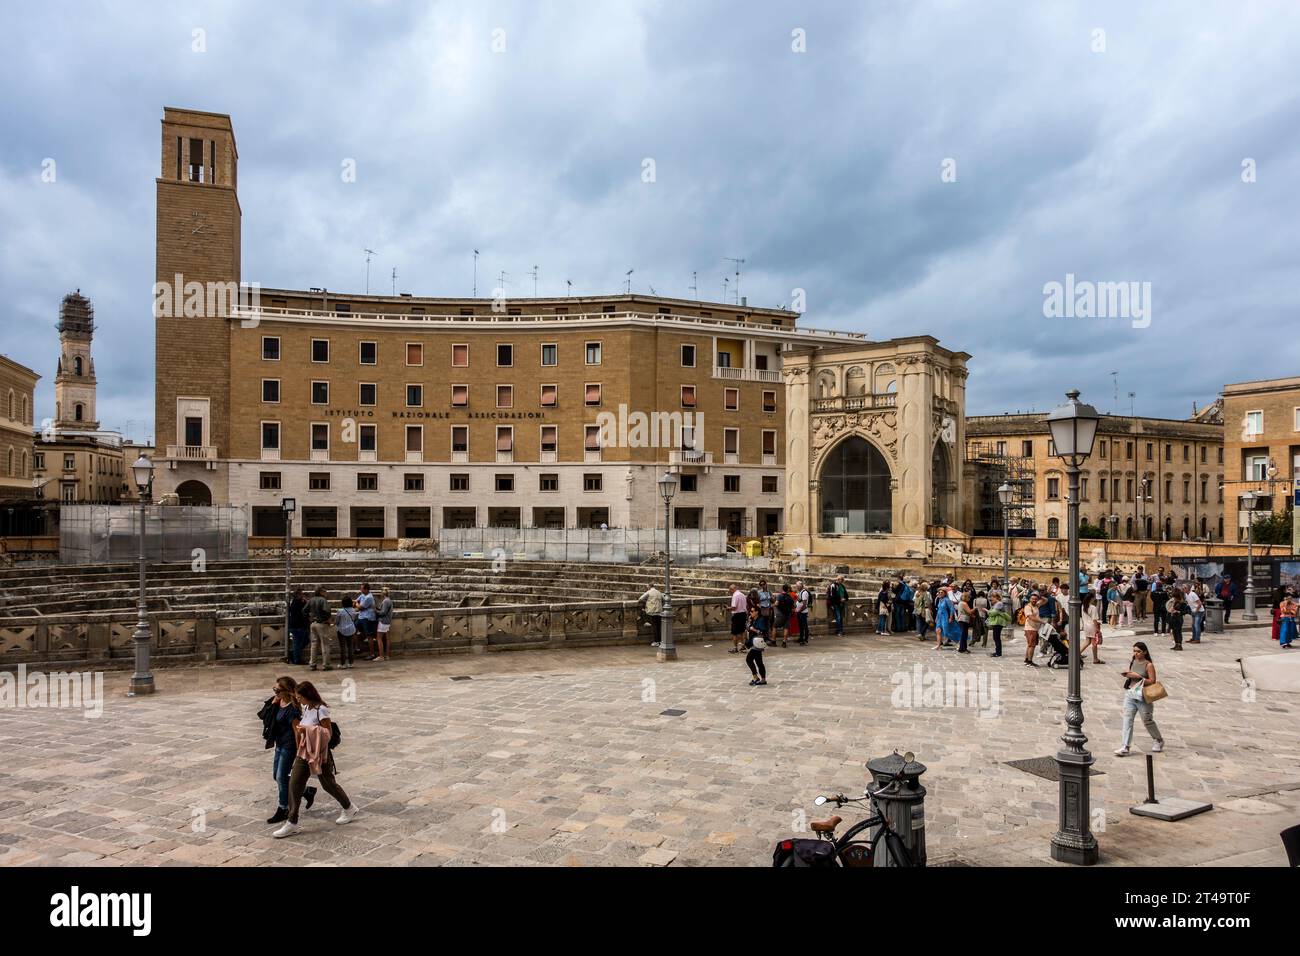 La place principale dans la vieille ville de Lecce, en Italie avec l'amphithéâtre romain dont l'existence a été redécouverte en 1901. Un lieu touristique très populaire. Banque D'Images